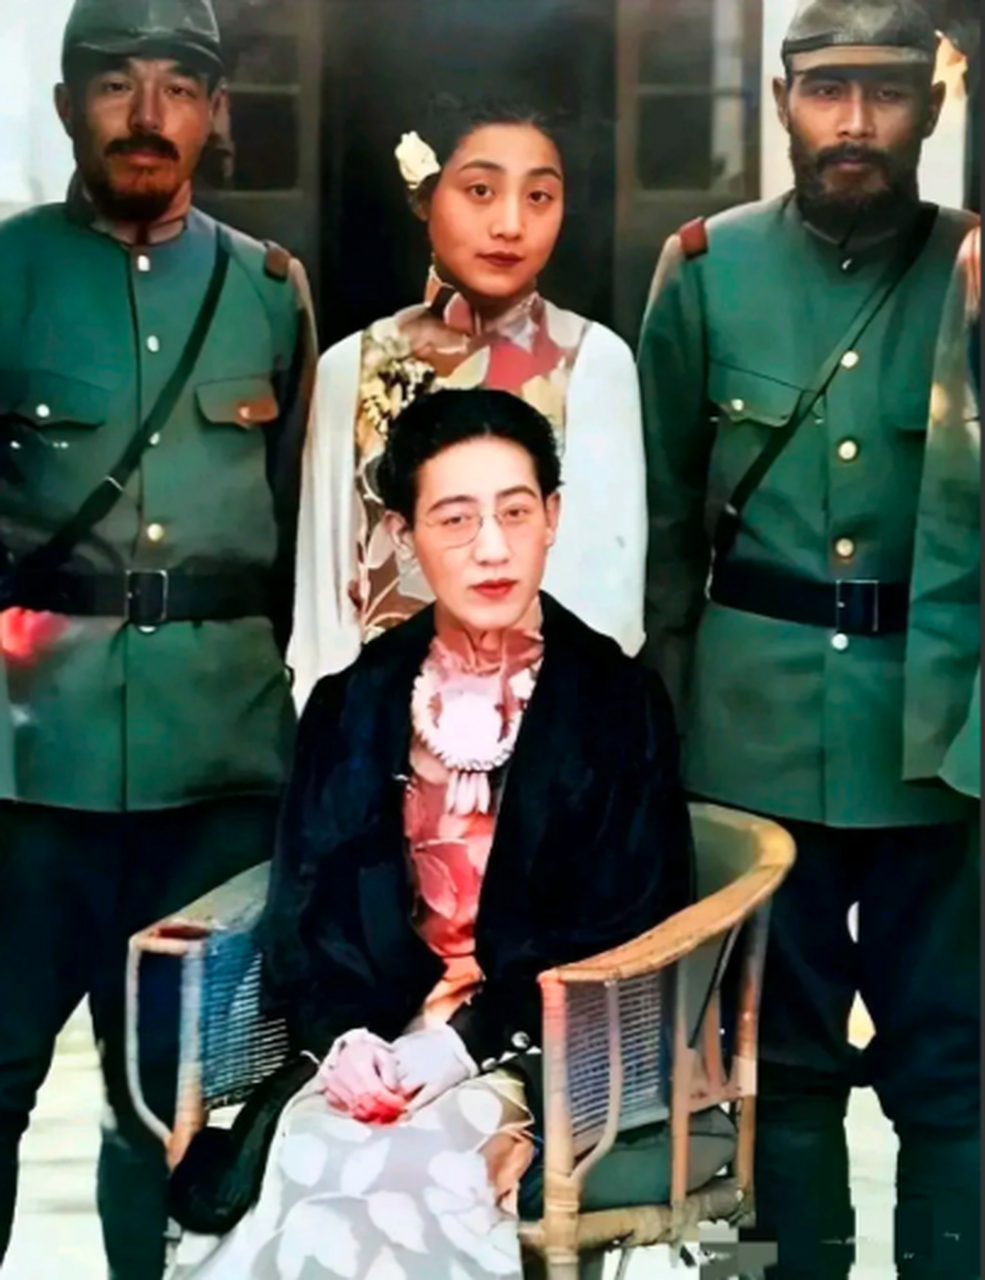 川岛芳子坐在第一排c位,在她身后就是她的侍女和日本军官,她长期被